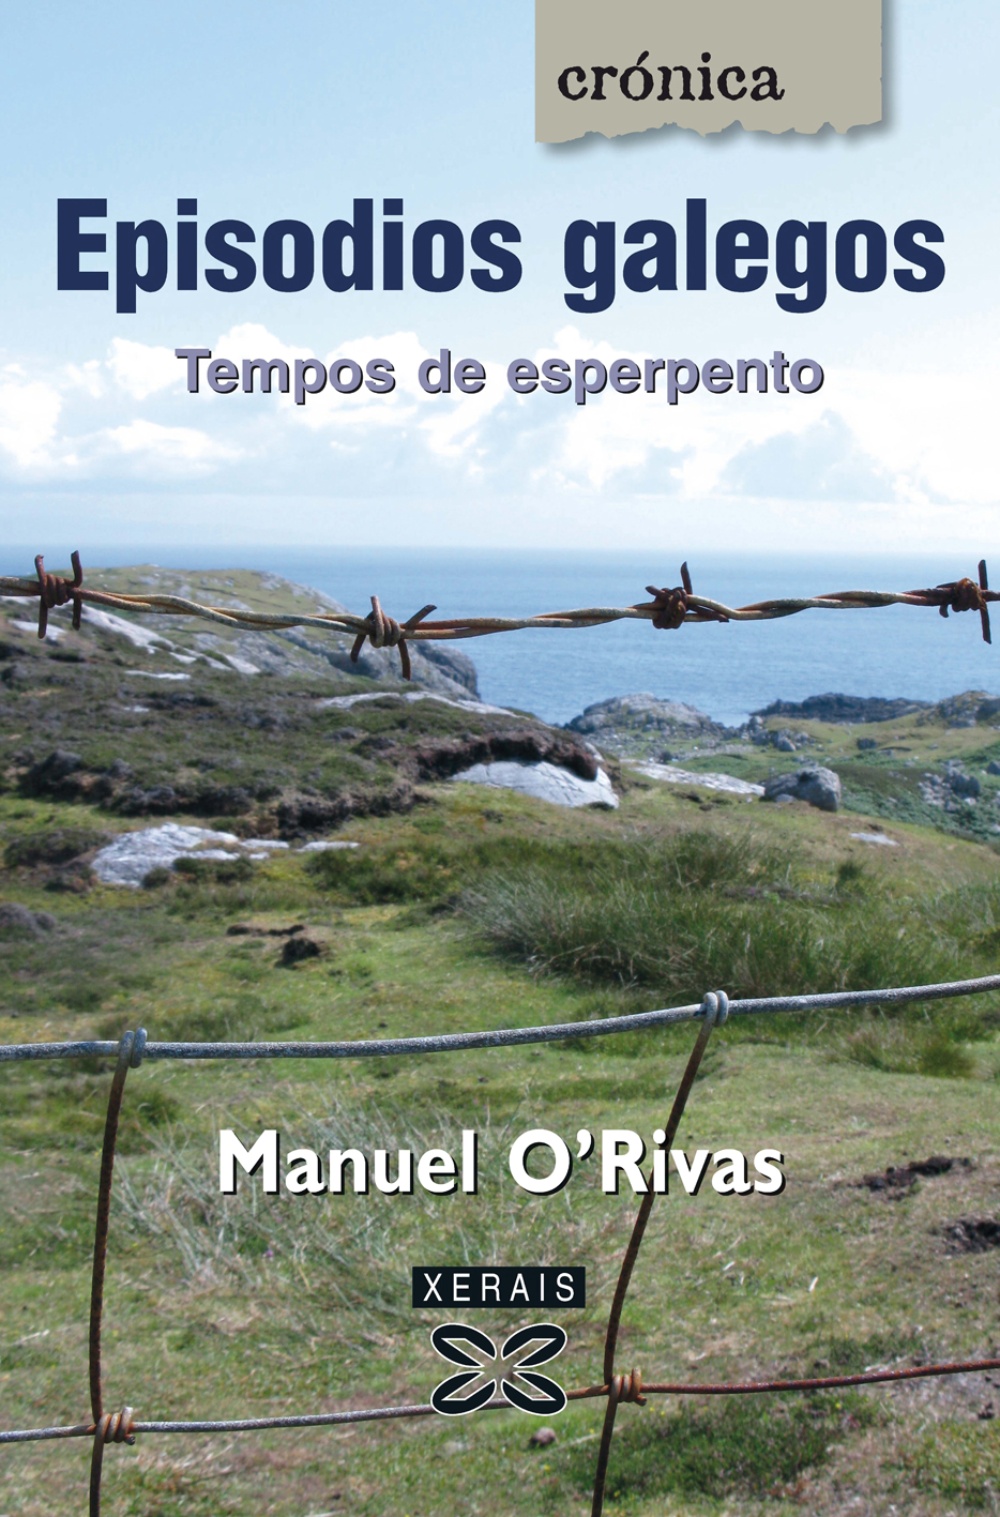 Episodios galegos